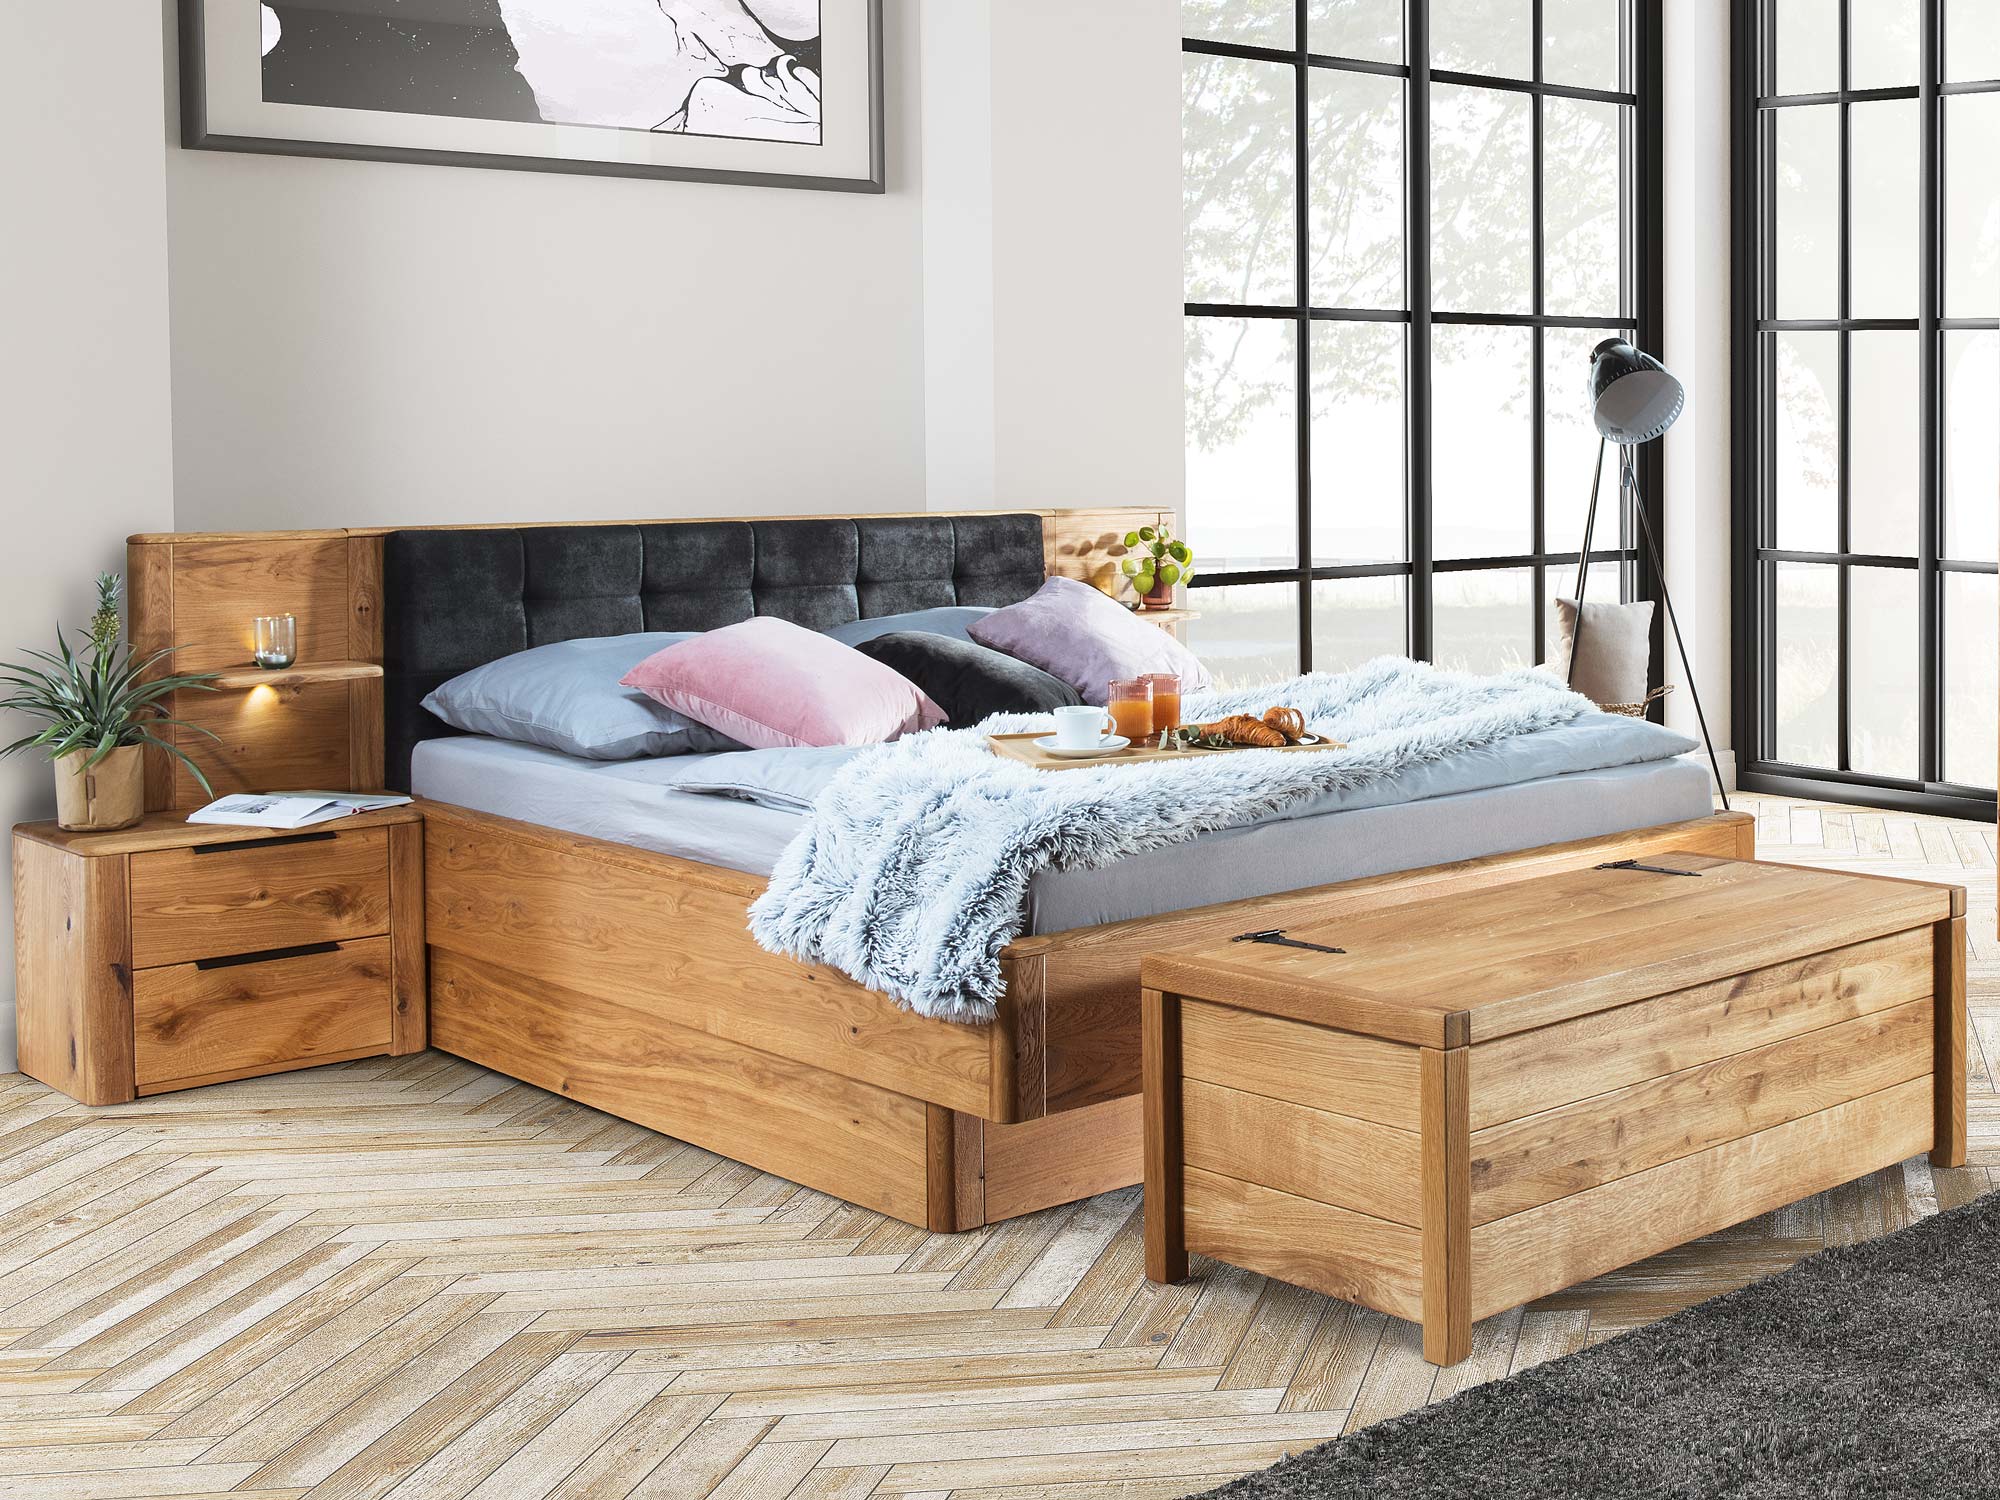 Drewniane łóżko do sypialni czy to dobry pomysł?